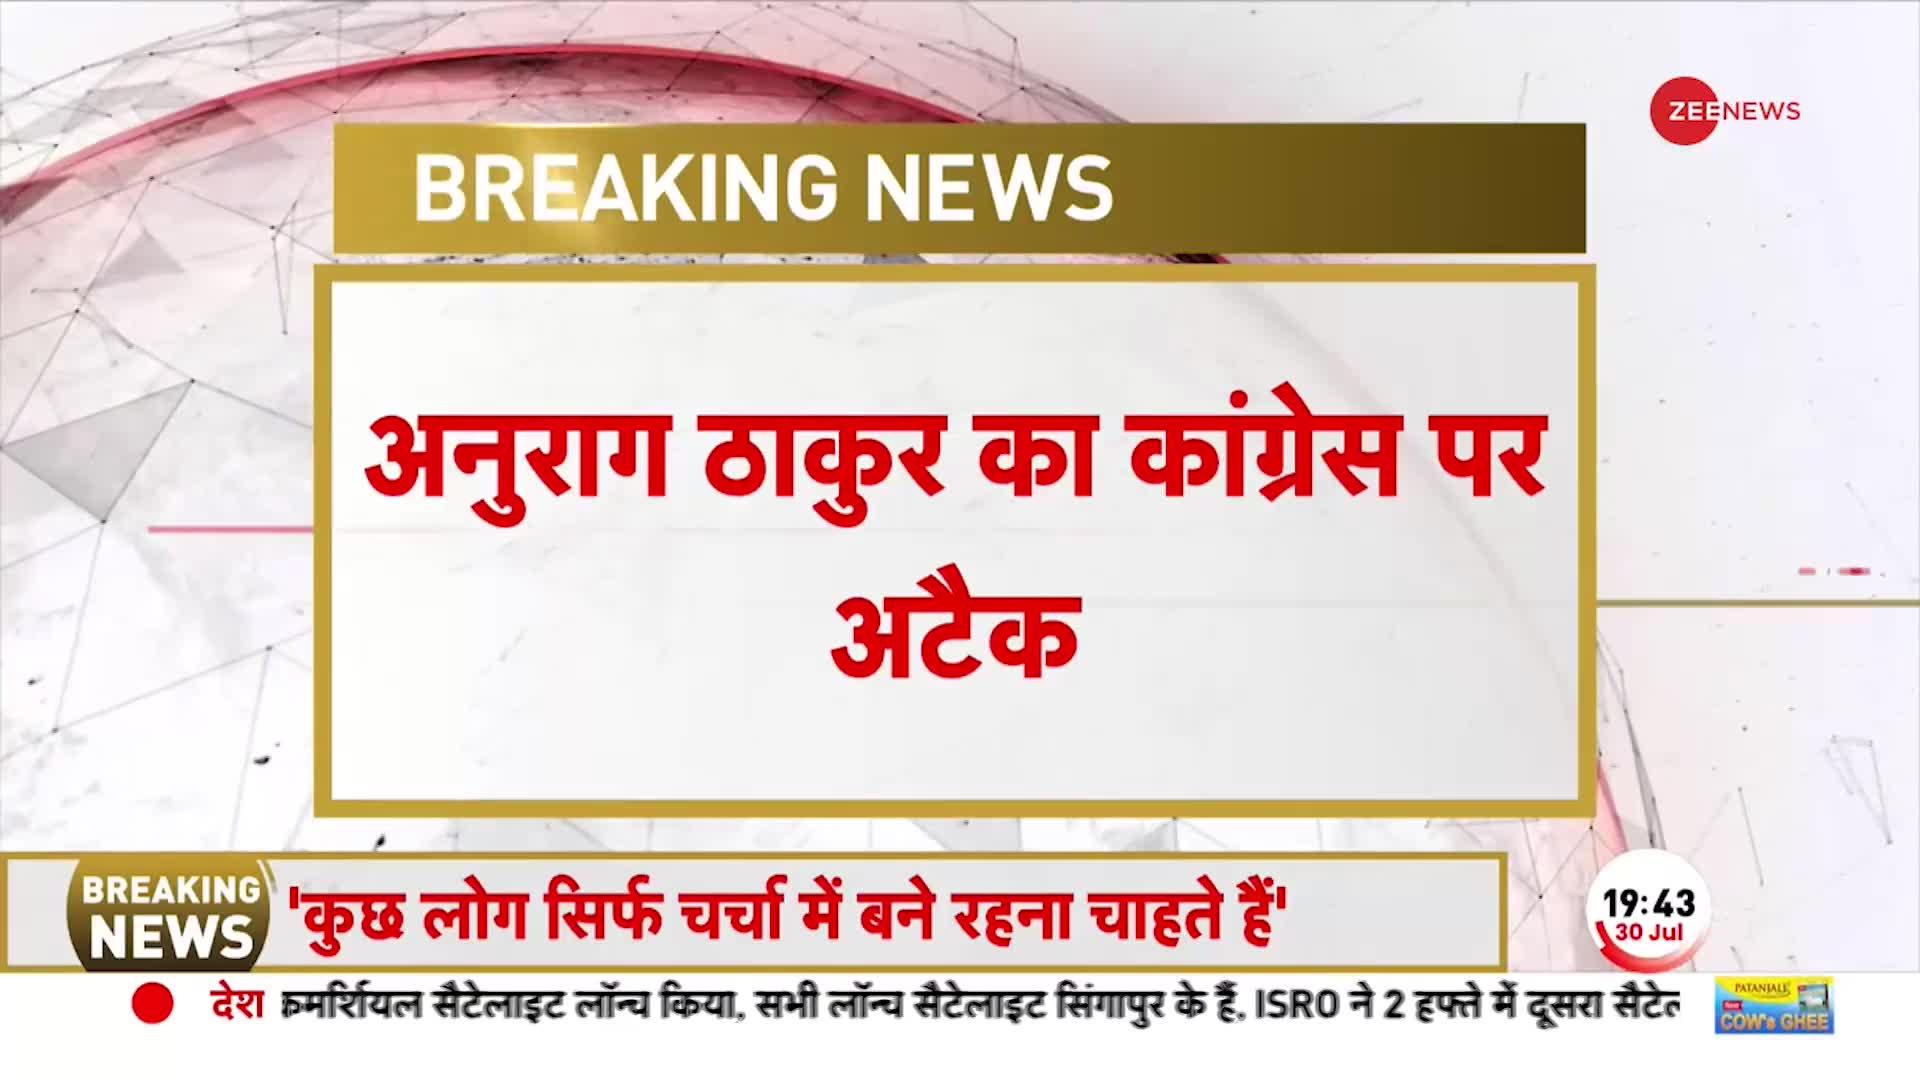 UPA की सरकार में मणिपुर बंद रहता था..तब PM मुंह तक नहीं खोलते थे- अनुराग ठाकुर